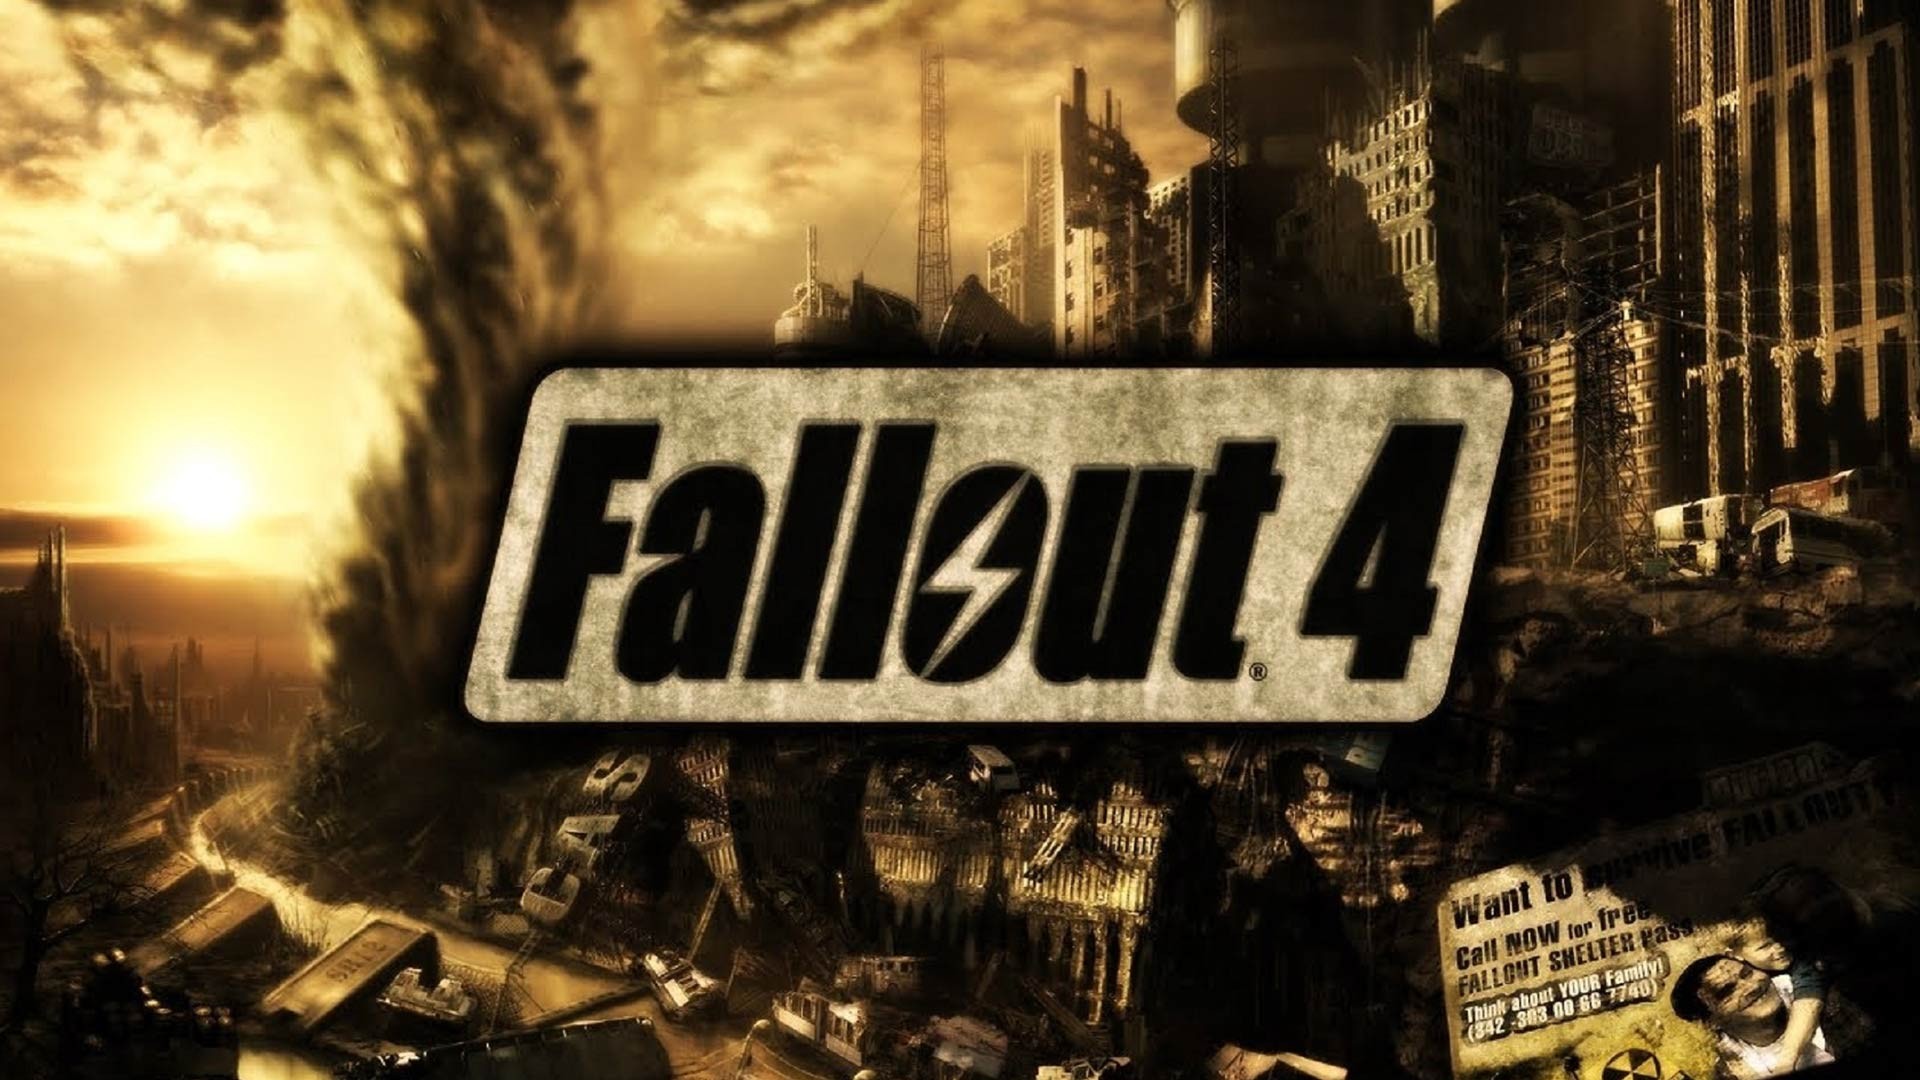 Fallout 4, Fallout Wallpaper